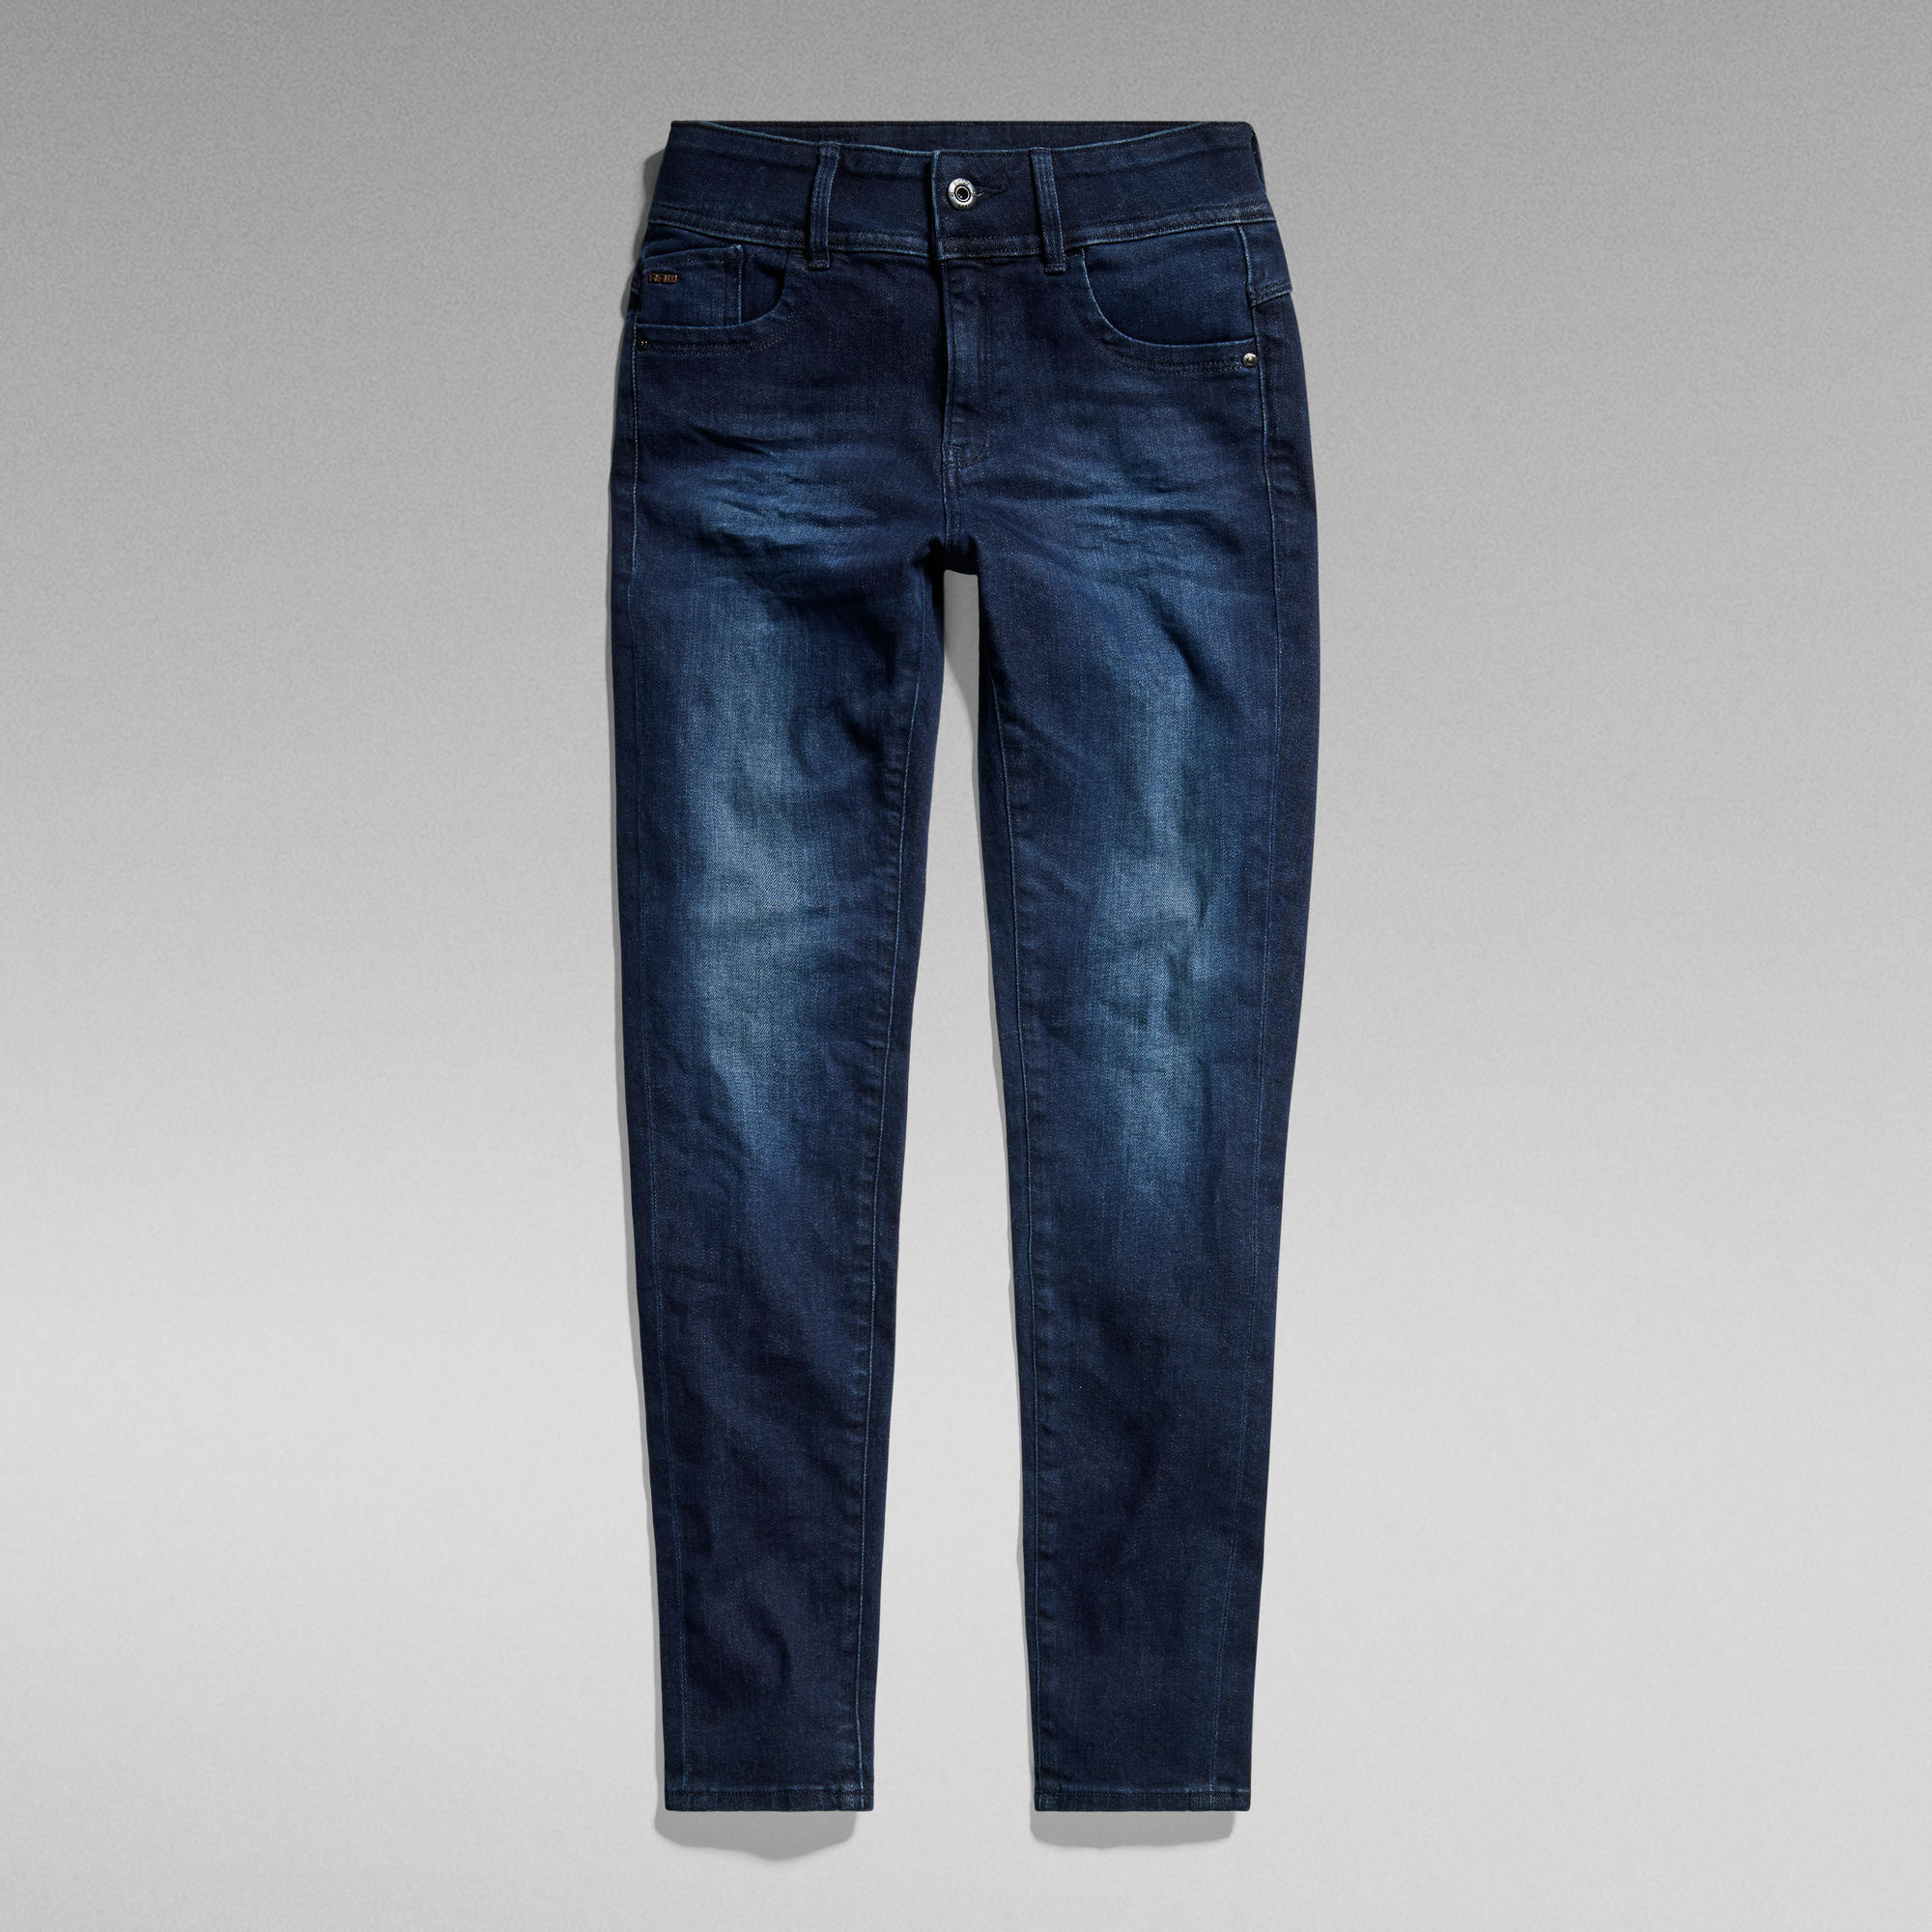 G-Star Raw skinny jeans faded indigo Blauw Meisjes Denim 152